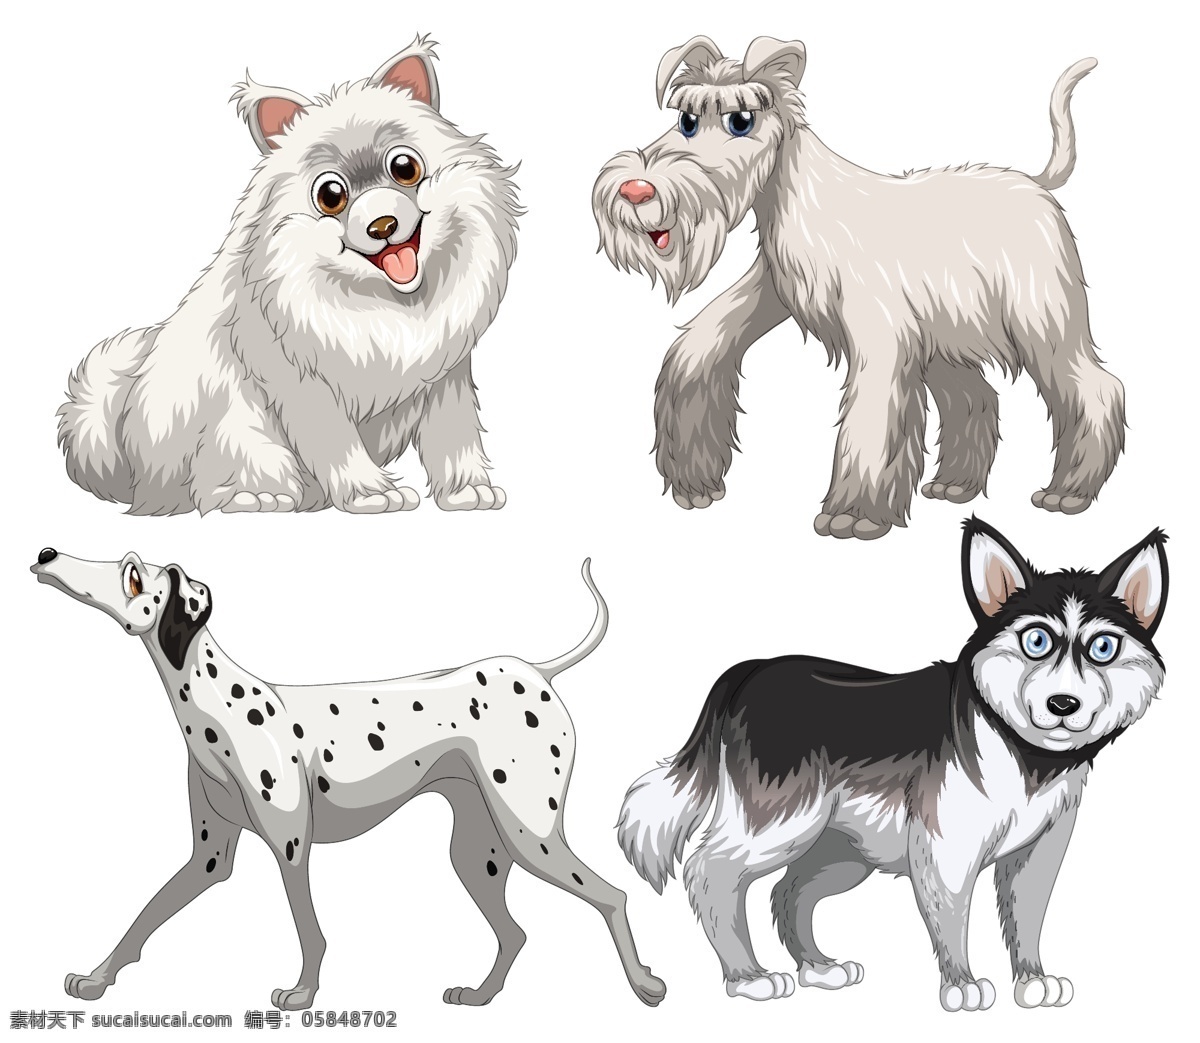 卡通狗图片 卡通狗 动物背景 动物素材 动物园 可爱 动物 狗 小狗 宠物狗 卡通动物生物 卡通设计